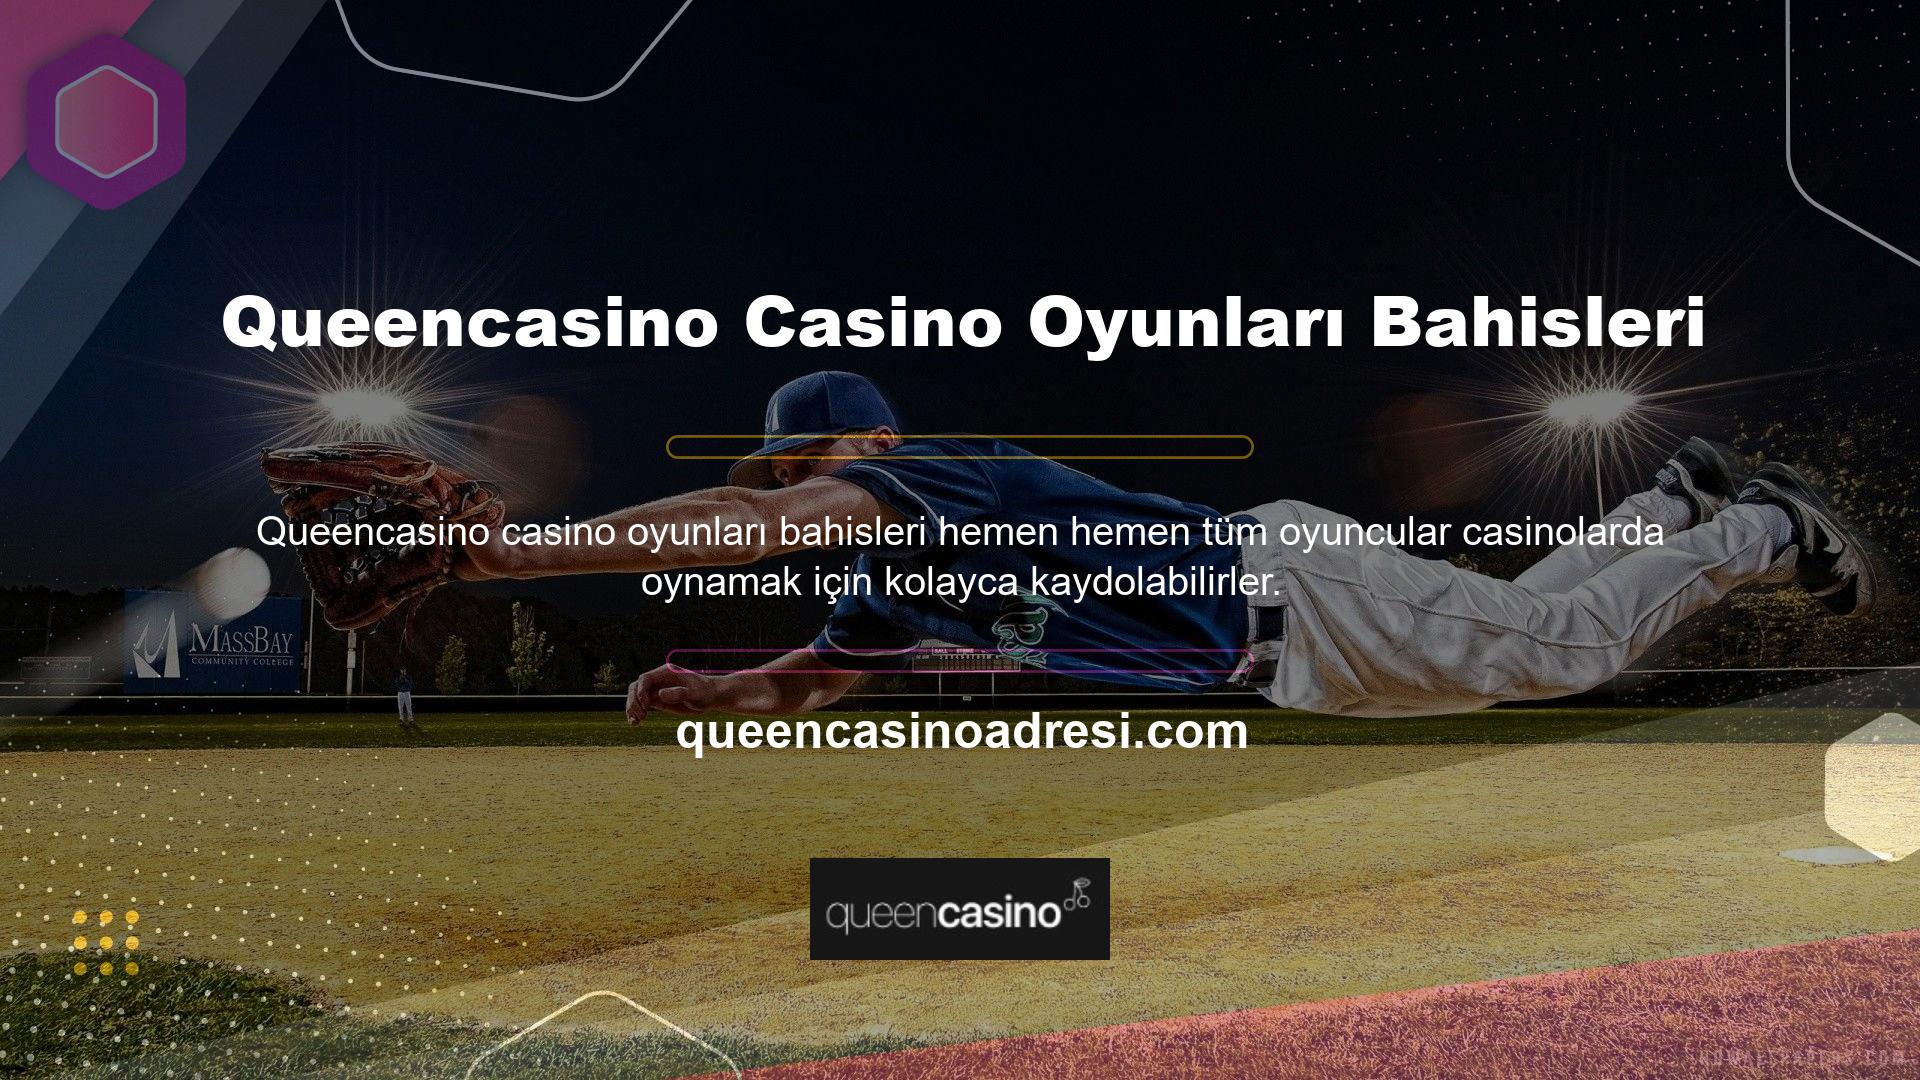 Queencasino casino bahislerinin çoğu, oyun şirketleri tarafından şeffaf bir şekilde yürütülen üyelik süreçlerini içerir